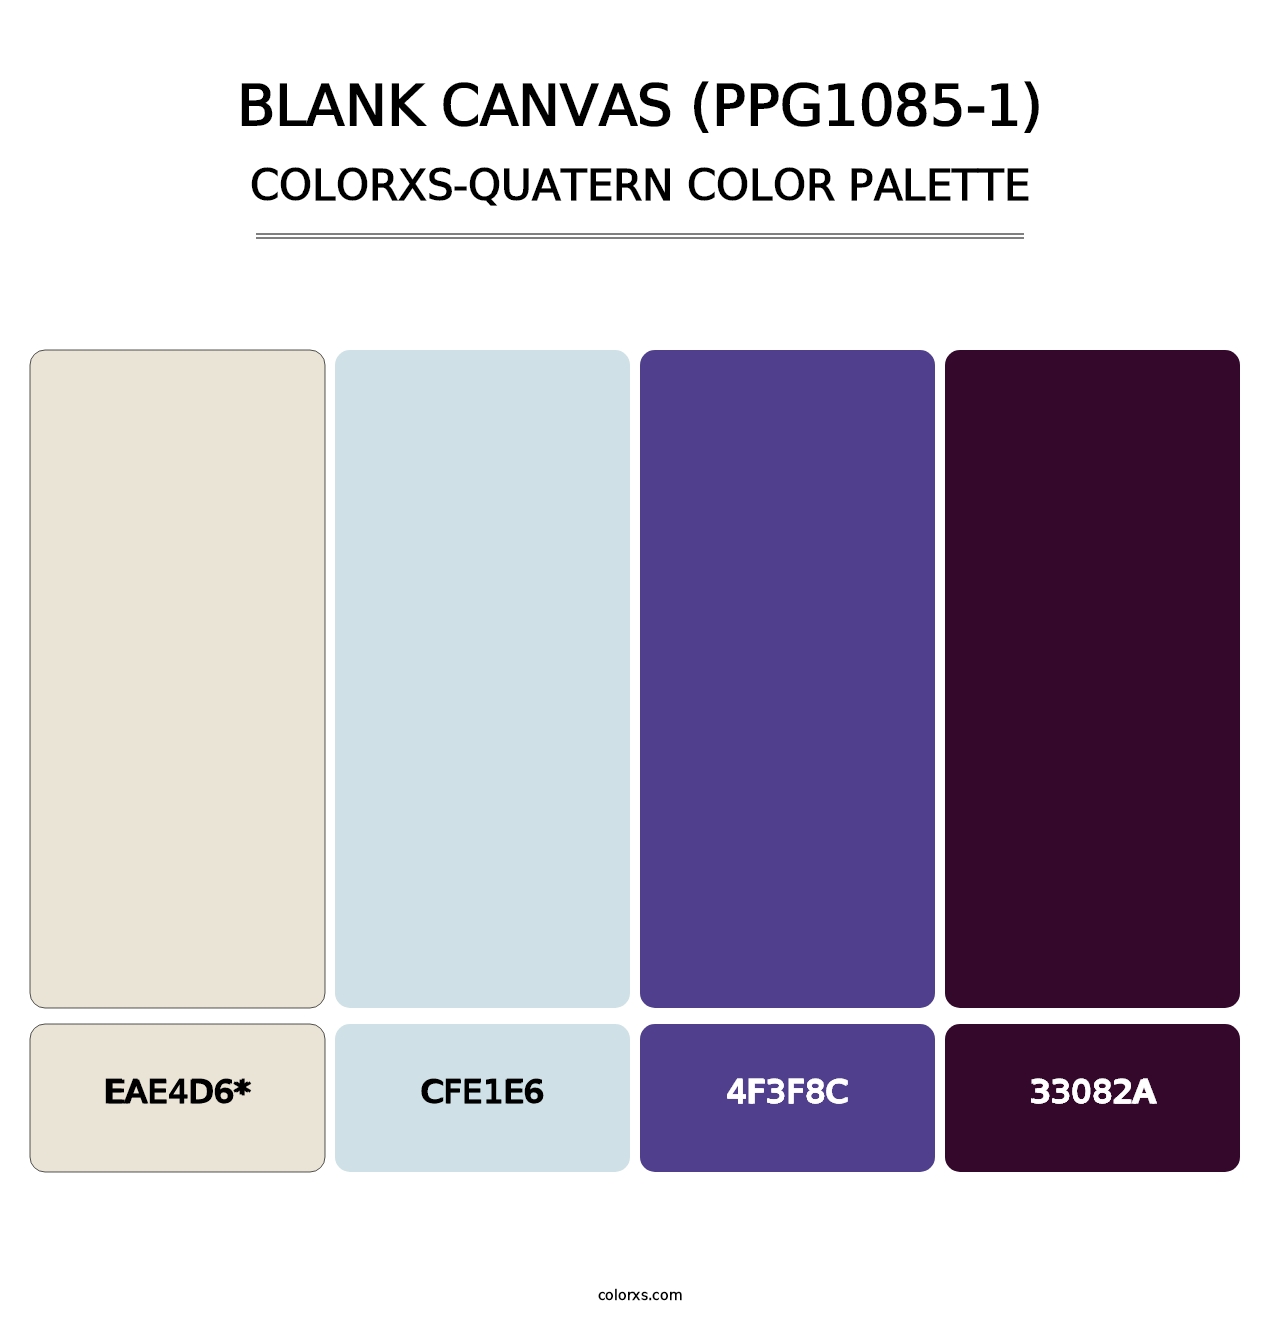 Blank Canvas (PPG1085-1) - Colorxs Quad Palette